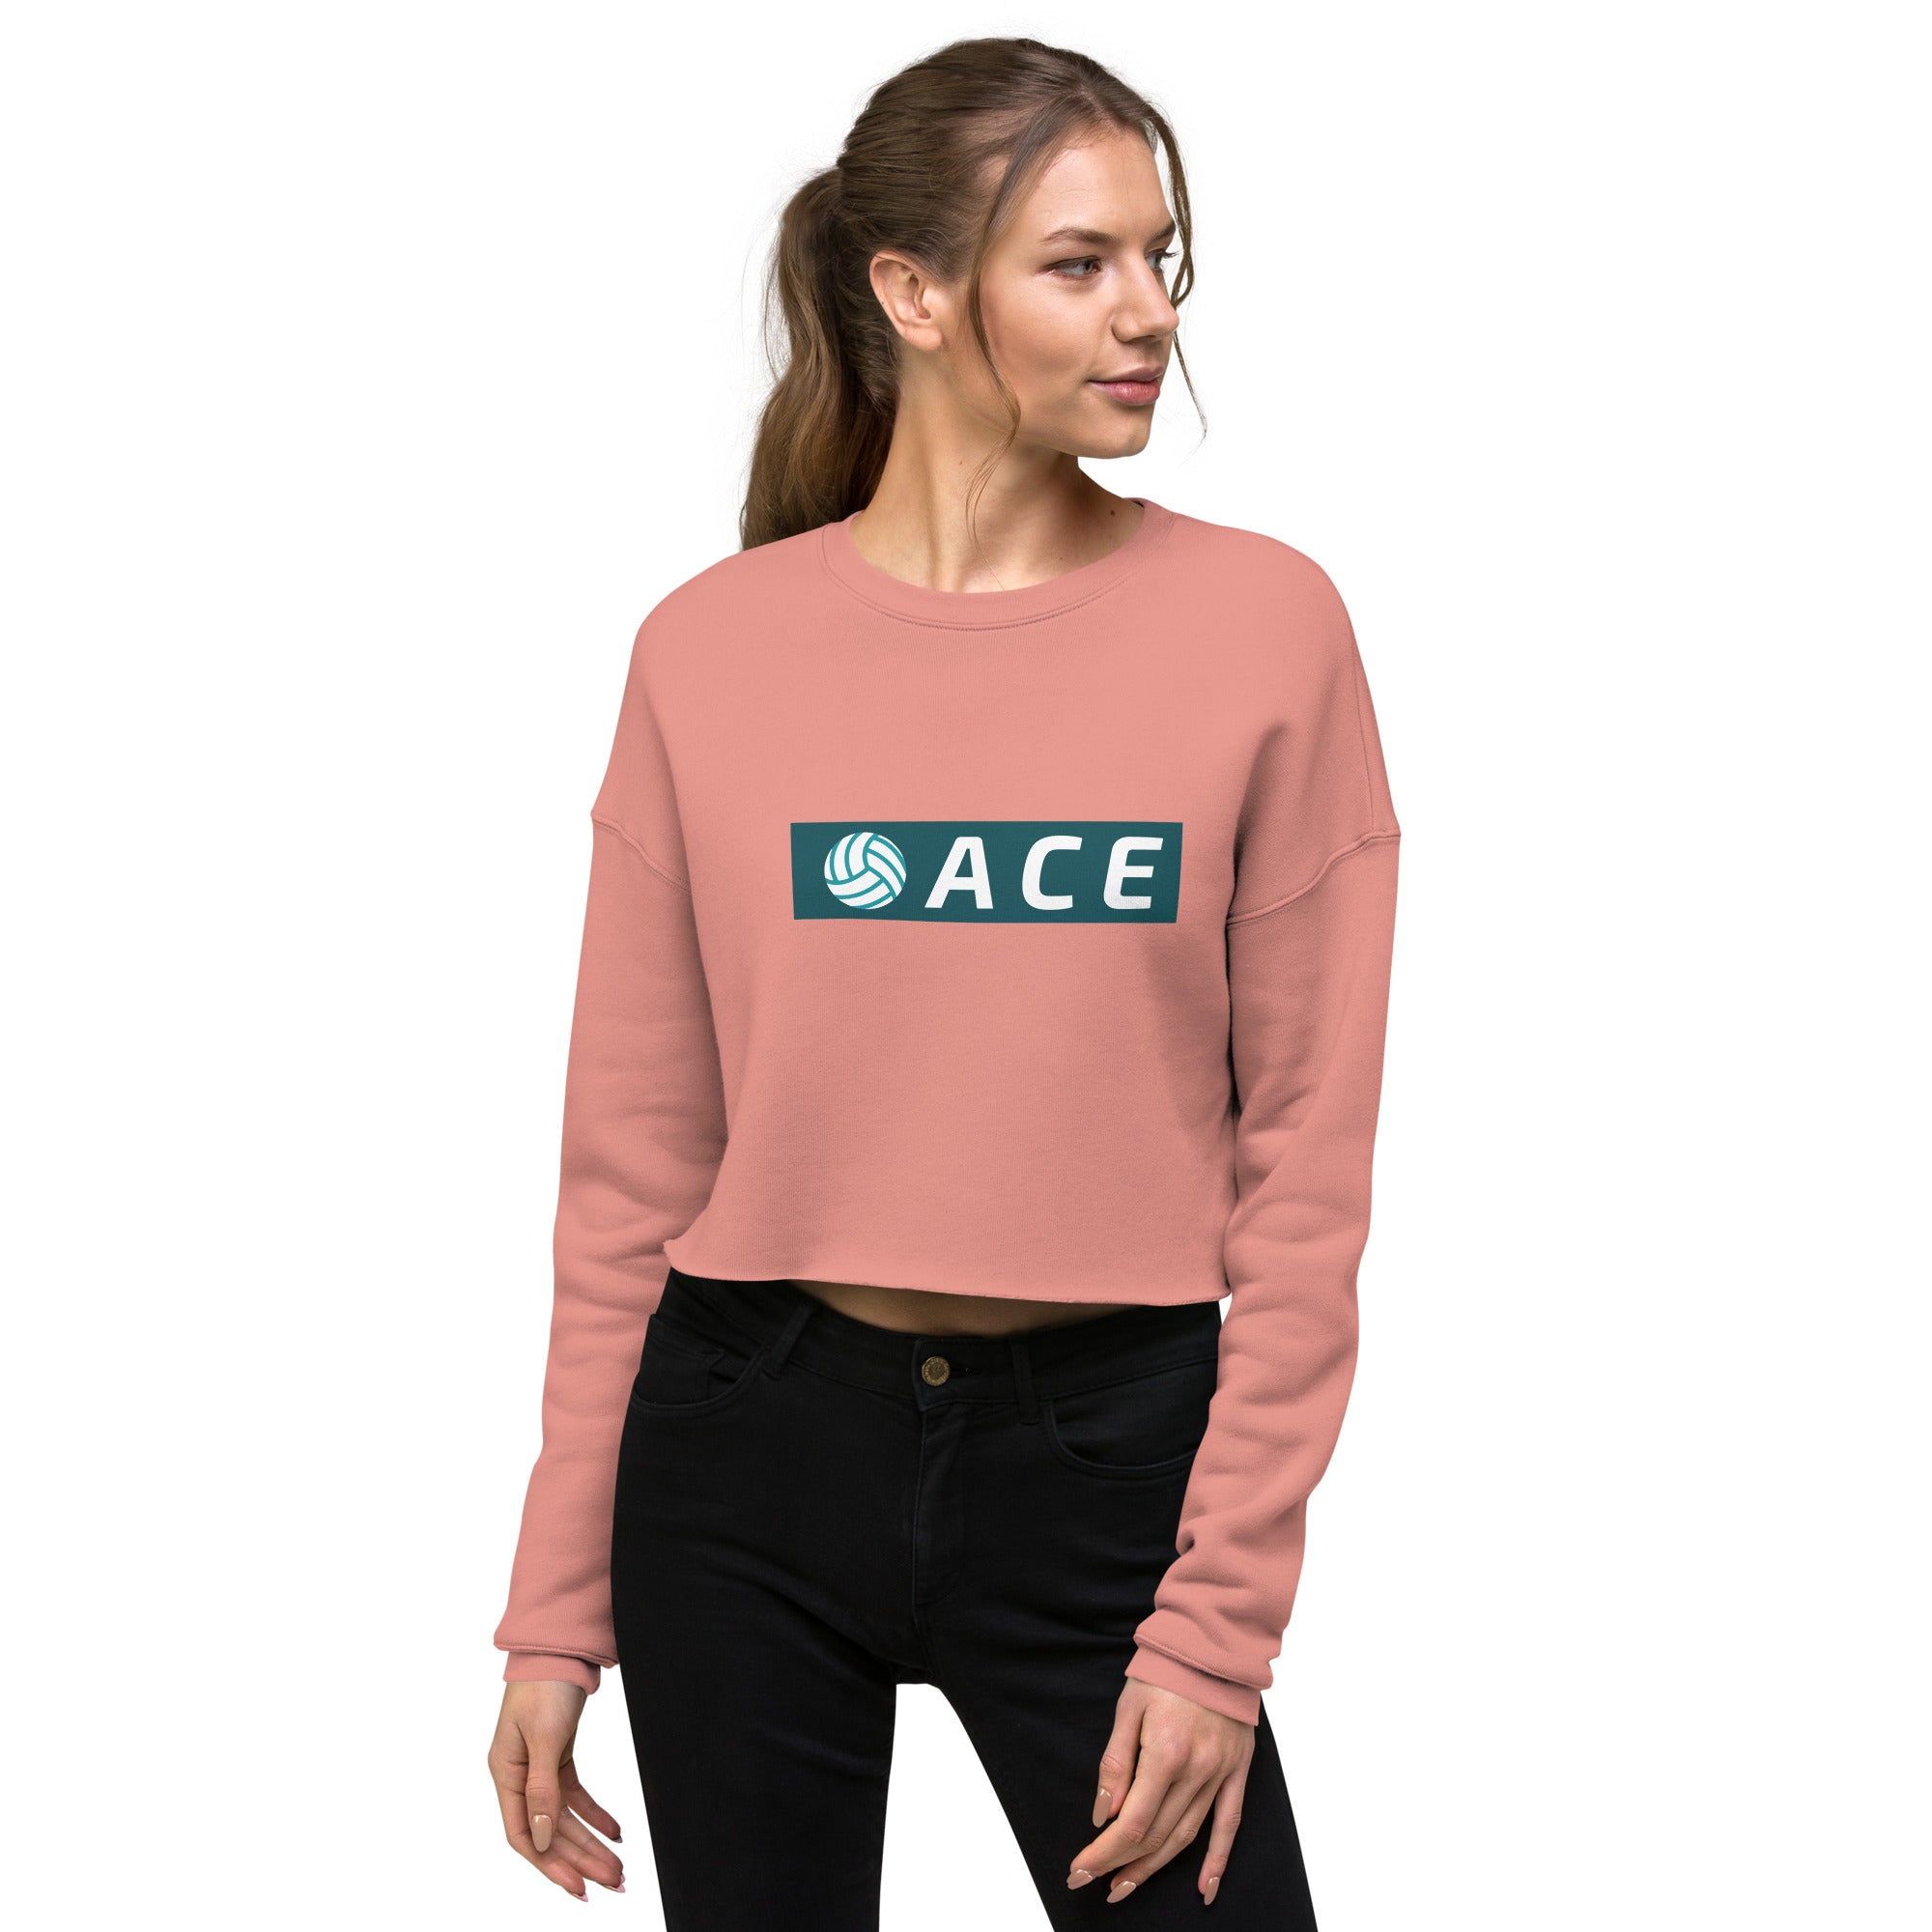 Ace Women's Crop Sweatshirt